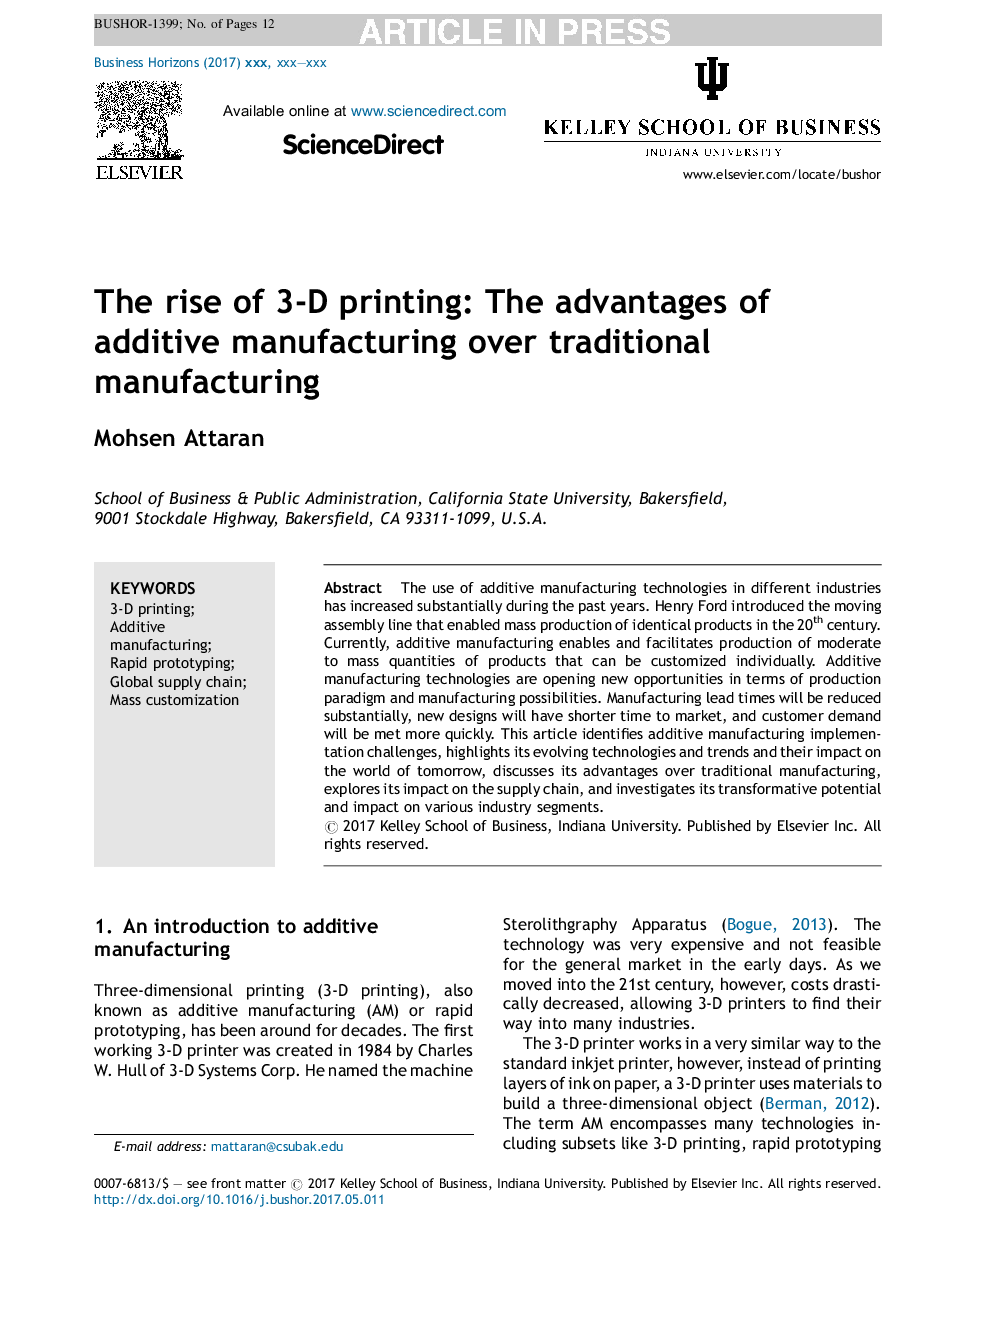 ظهور چاپ سهبعدی: مزایای استفاده از تولید افزایشی نسبت به تولید سنتی 